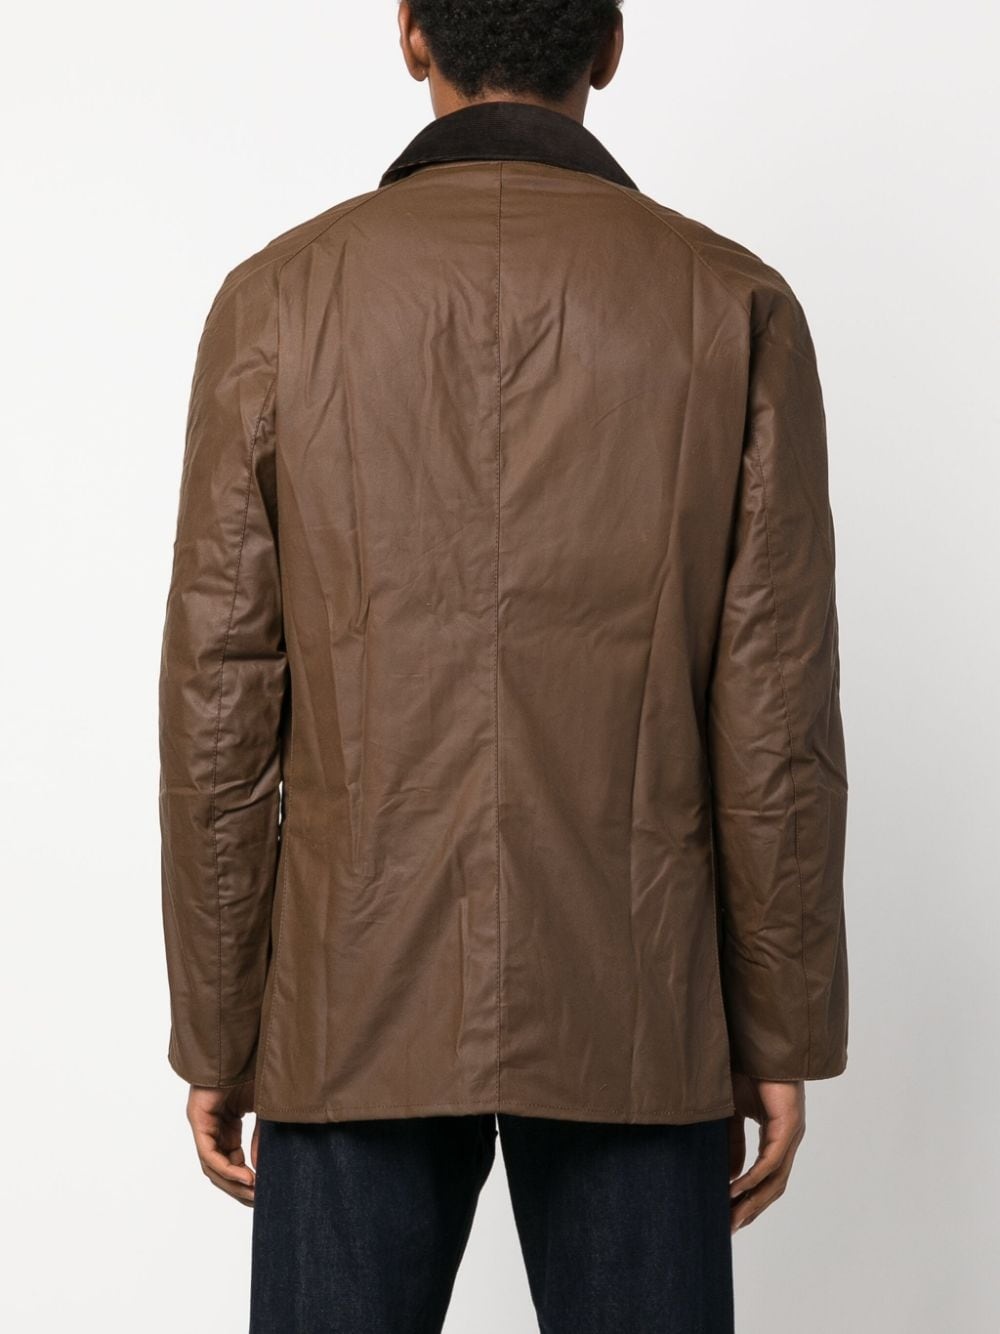 Beaufort press-stud wax jacket - 4